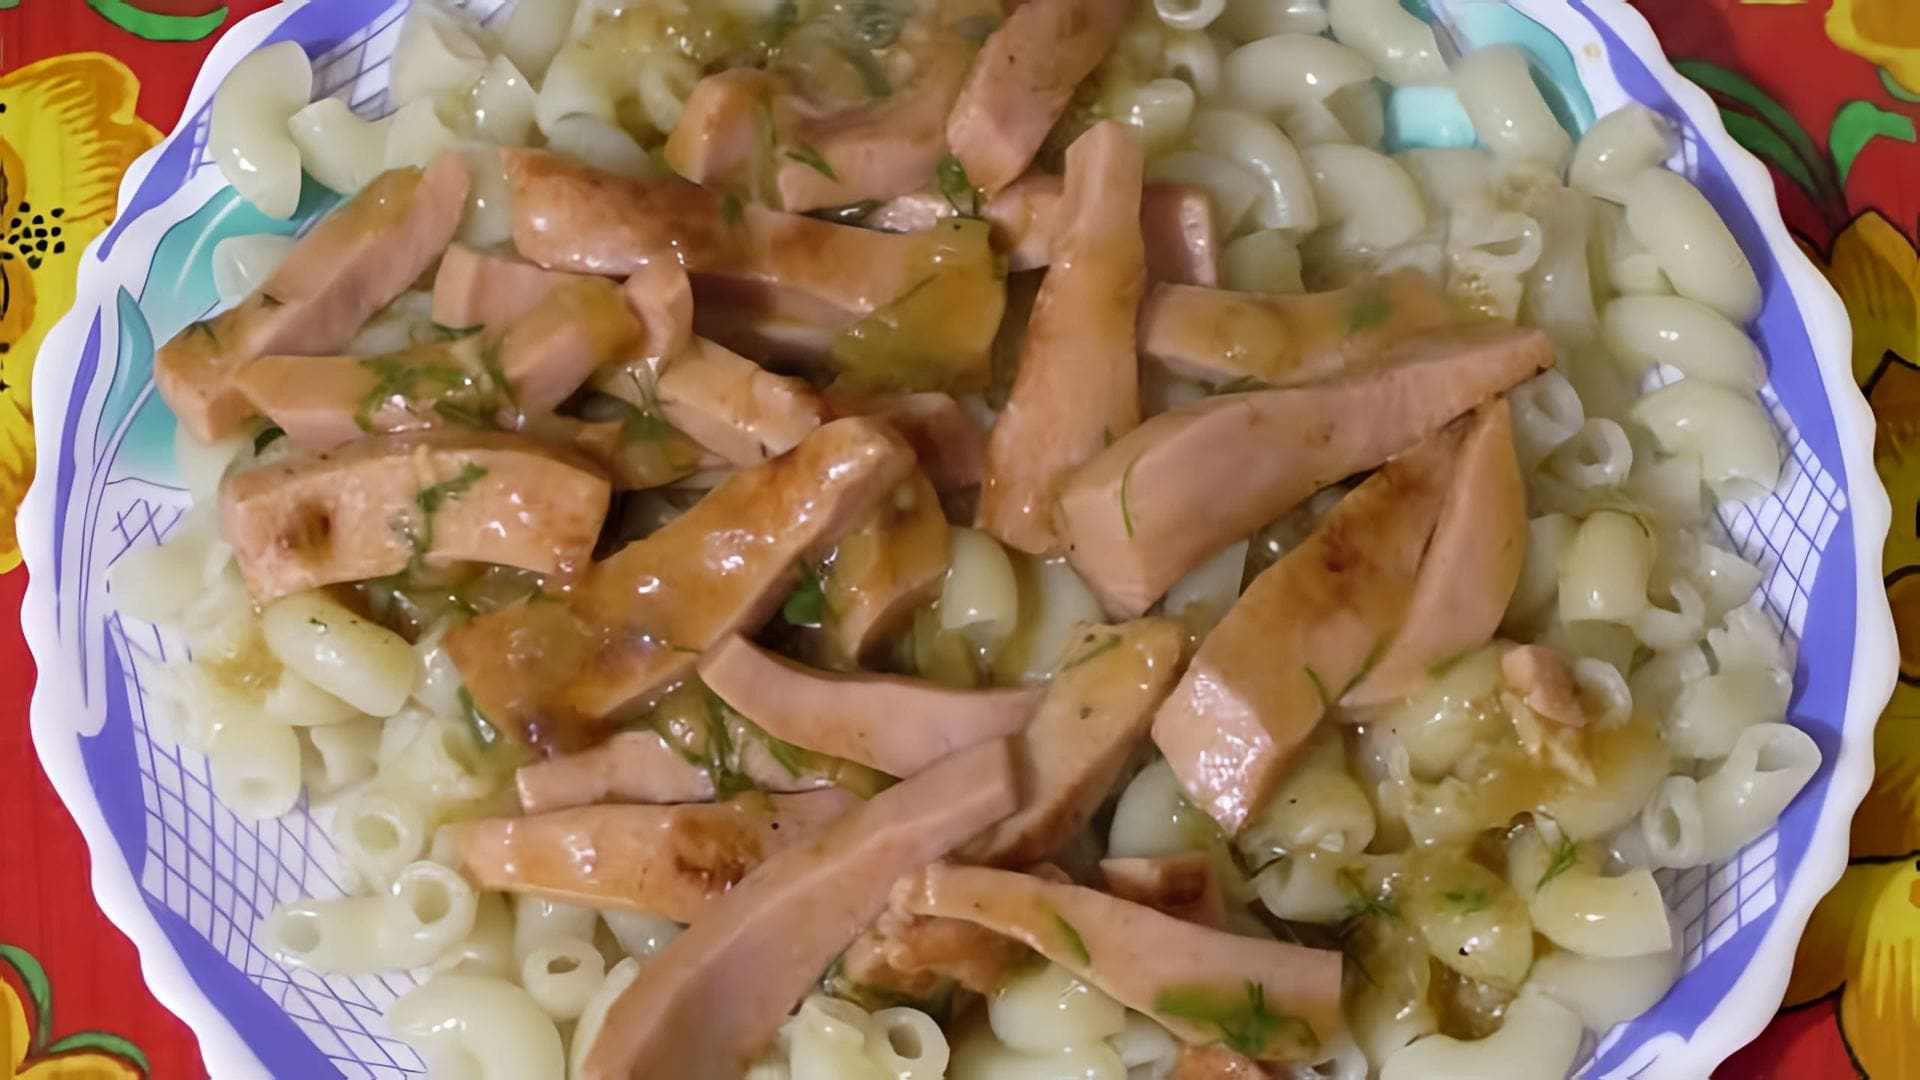 В этом видео демонстрируется простой и быстрый рецепт приготовления вареной колбасы в подливе